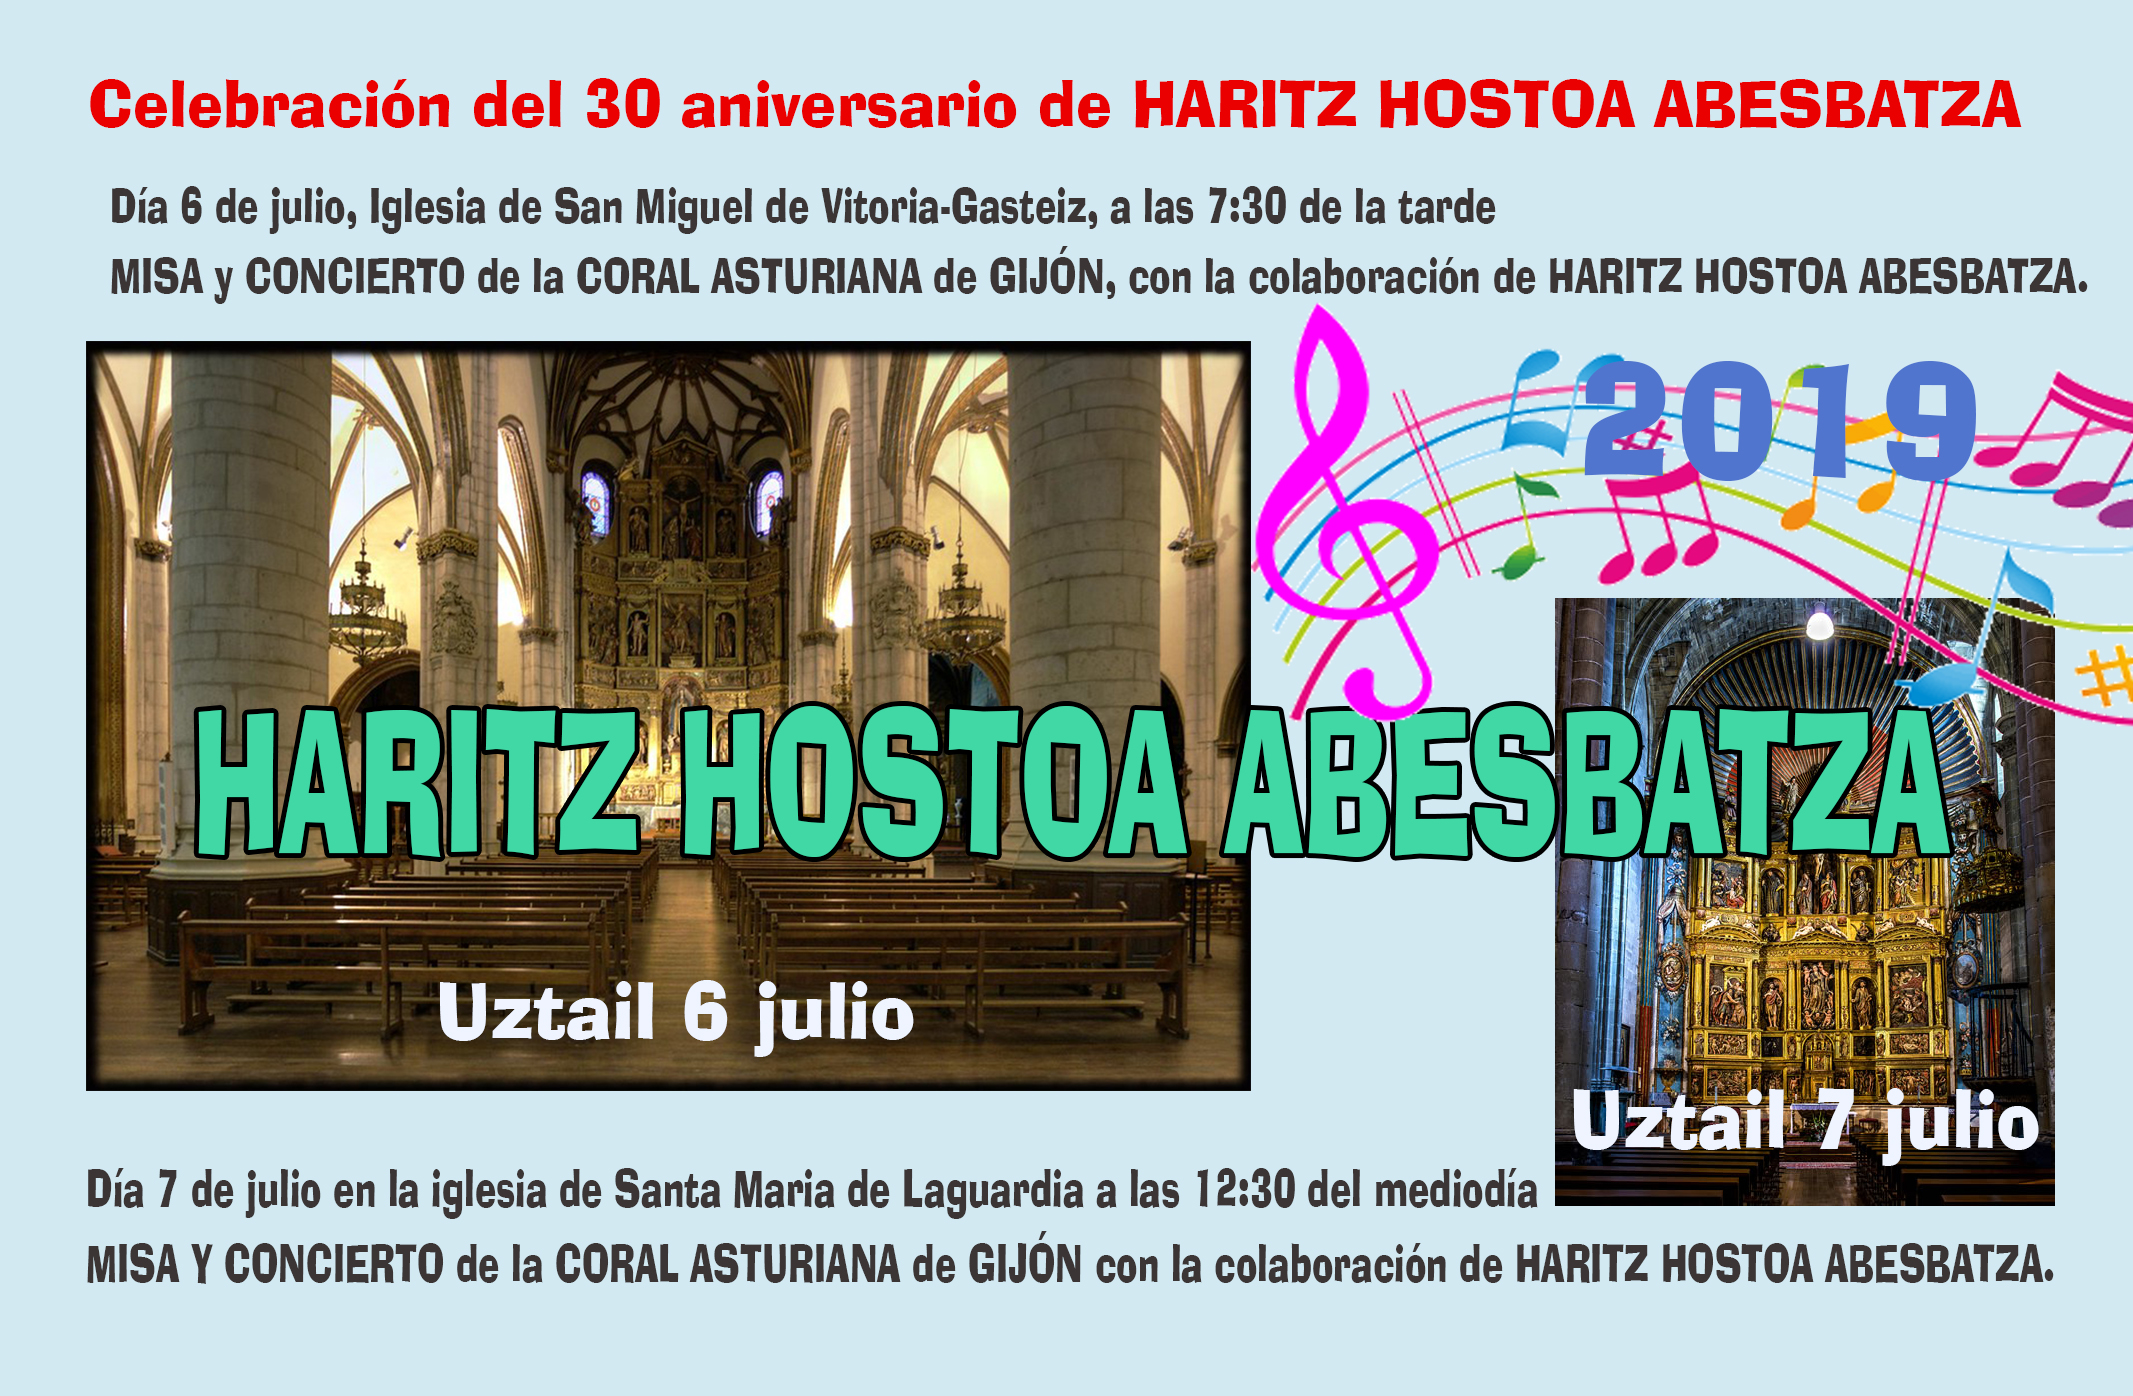 Celebración del 30 aniversario de HARITZ HOSTOA ABESBATZA, se van a celebrar dos conciertos el próximo fin de semana 6 y 7 julio 2019